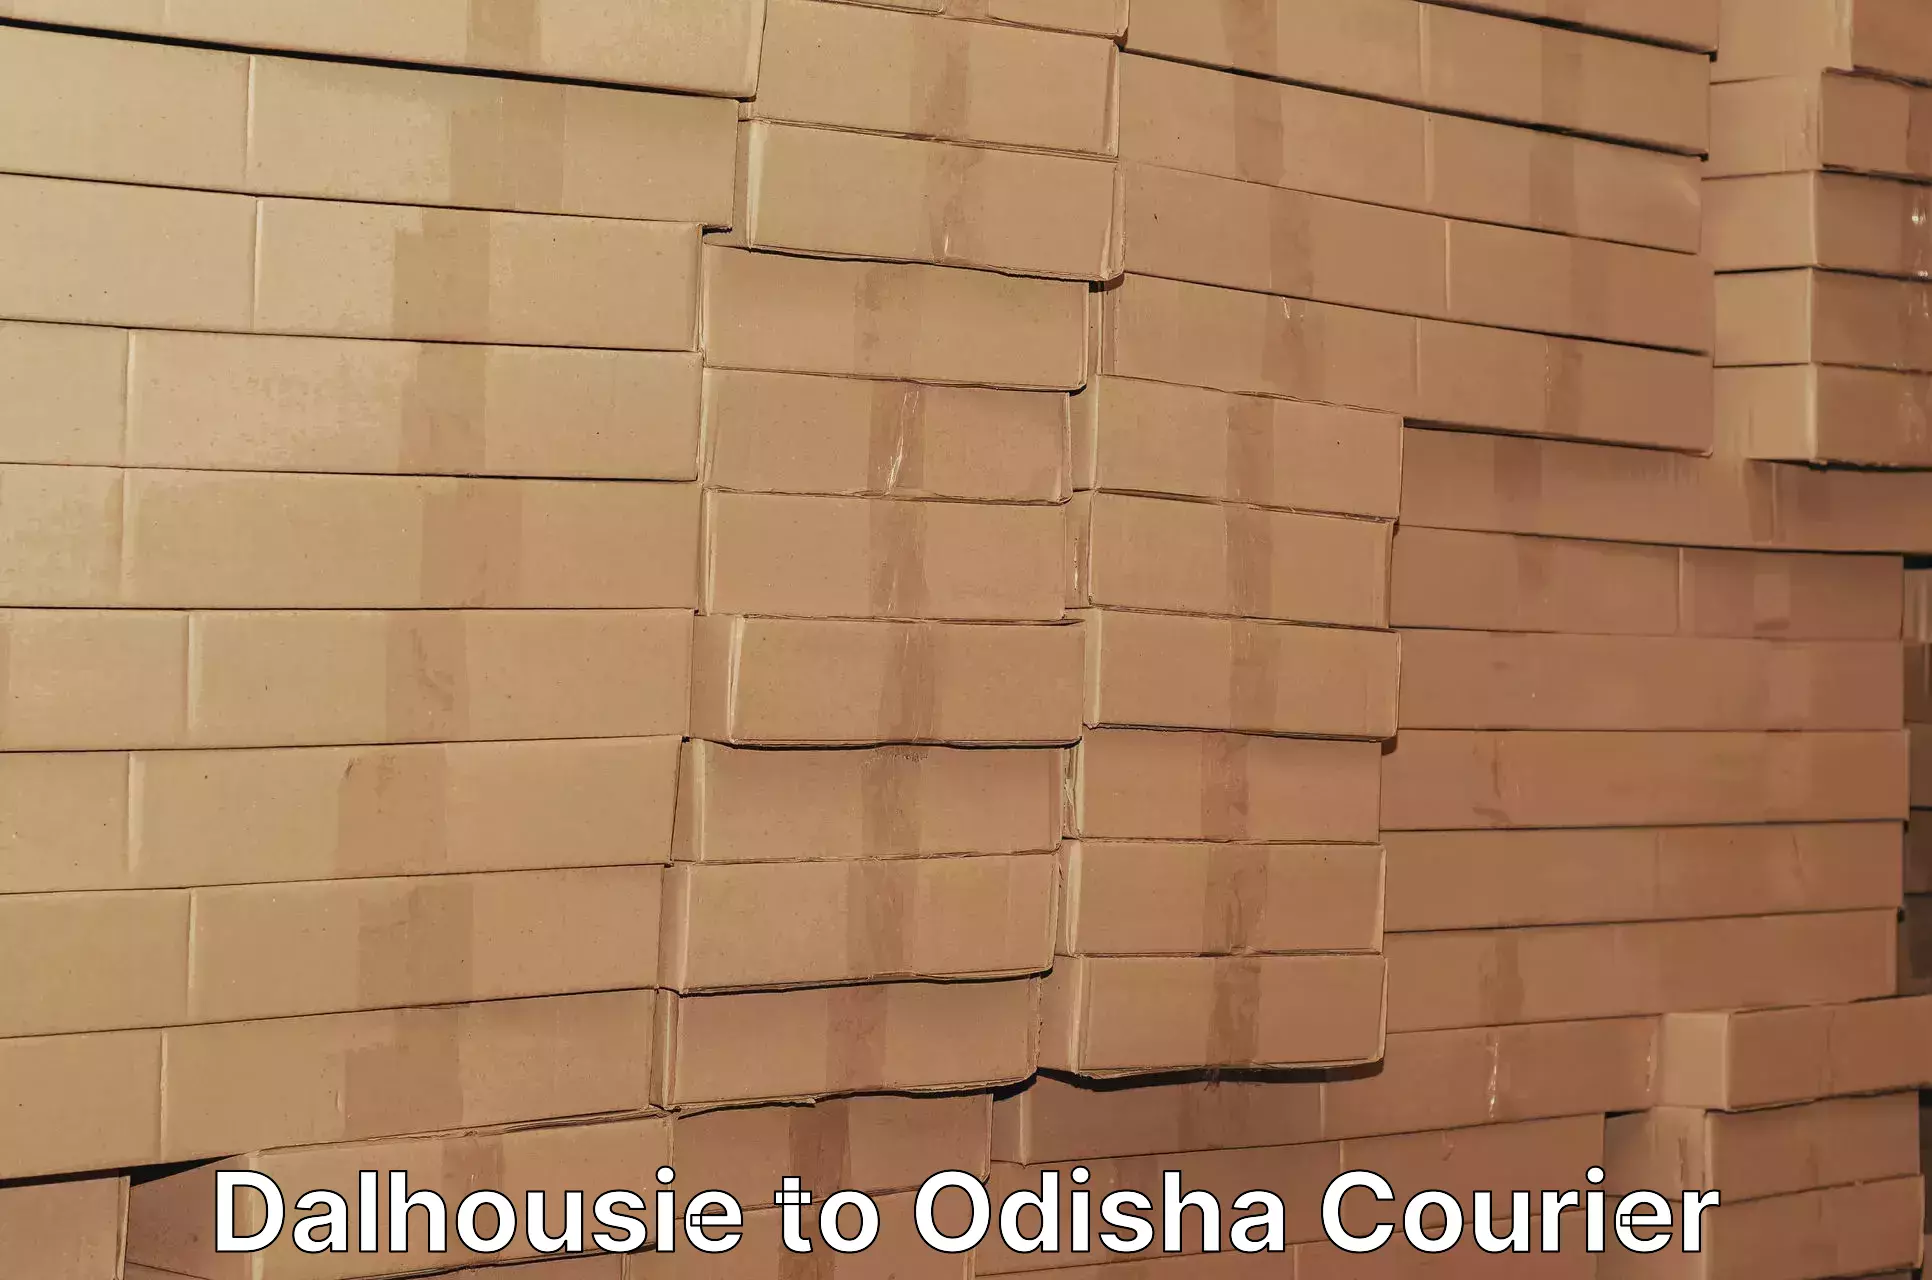 Subscription-based courier Dalhousie to Ukhunda